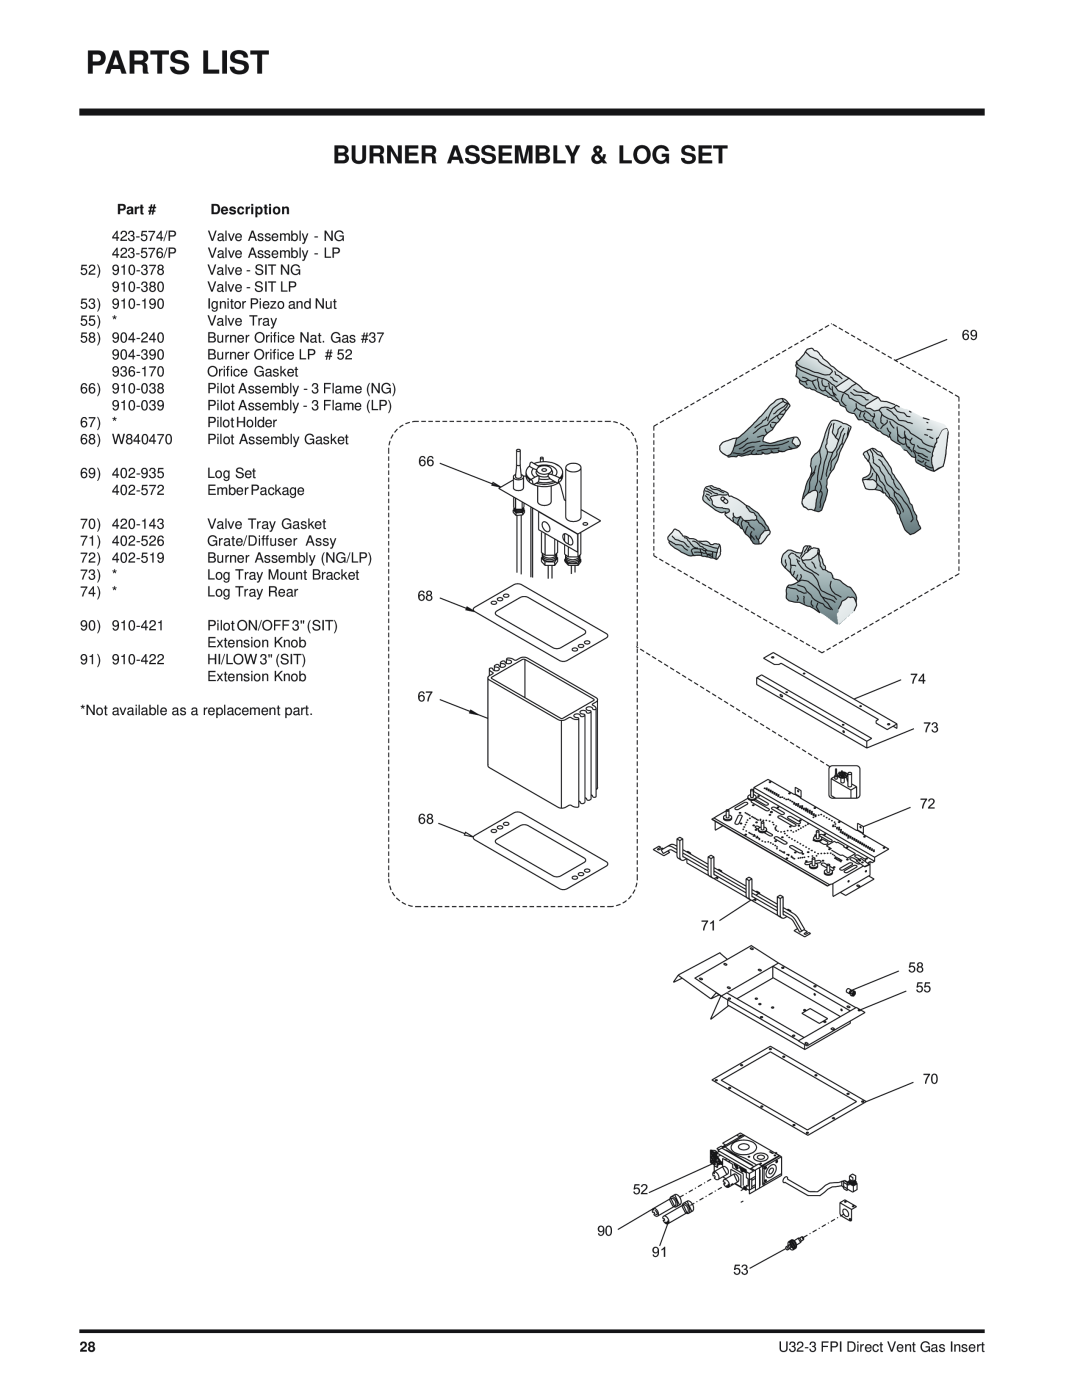 Regency U32-NG3 installation manual Burner Assembly & Log Set, Description 